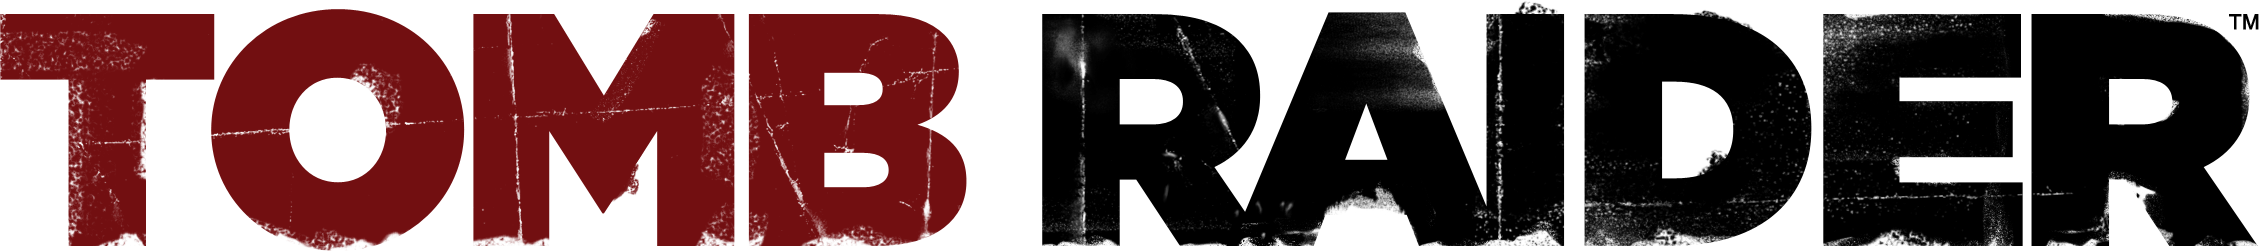 Tomb Raider Logo PNG Ausschnitt